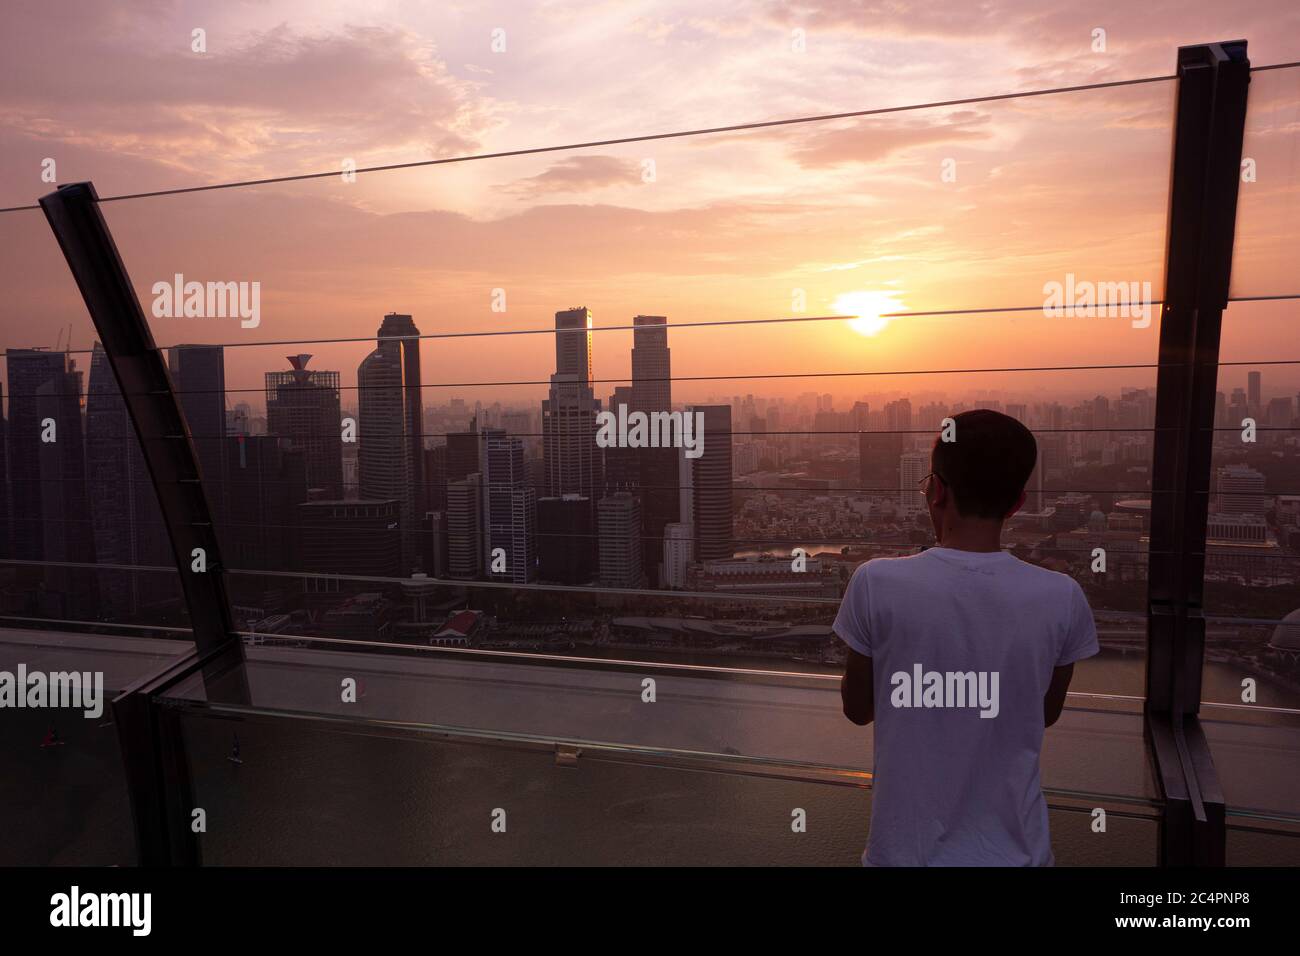 Jeune homme observant le coucher de soleil sur la ligne d'horizon du centre-ville de Singapour, vu de Marina Bay Sands. Singapour Banque D'Images